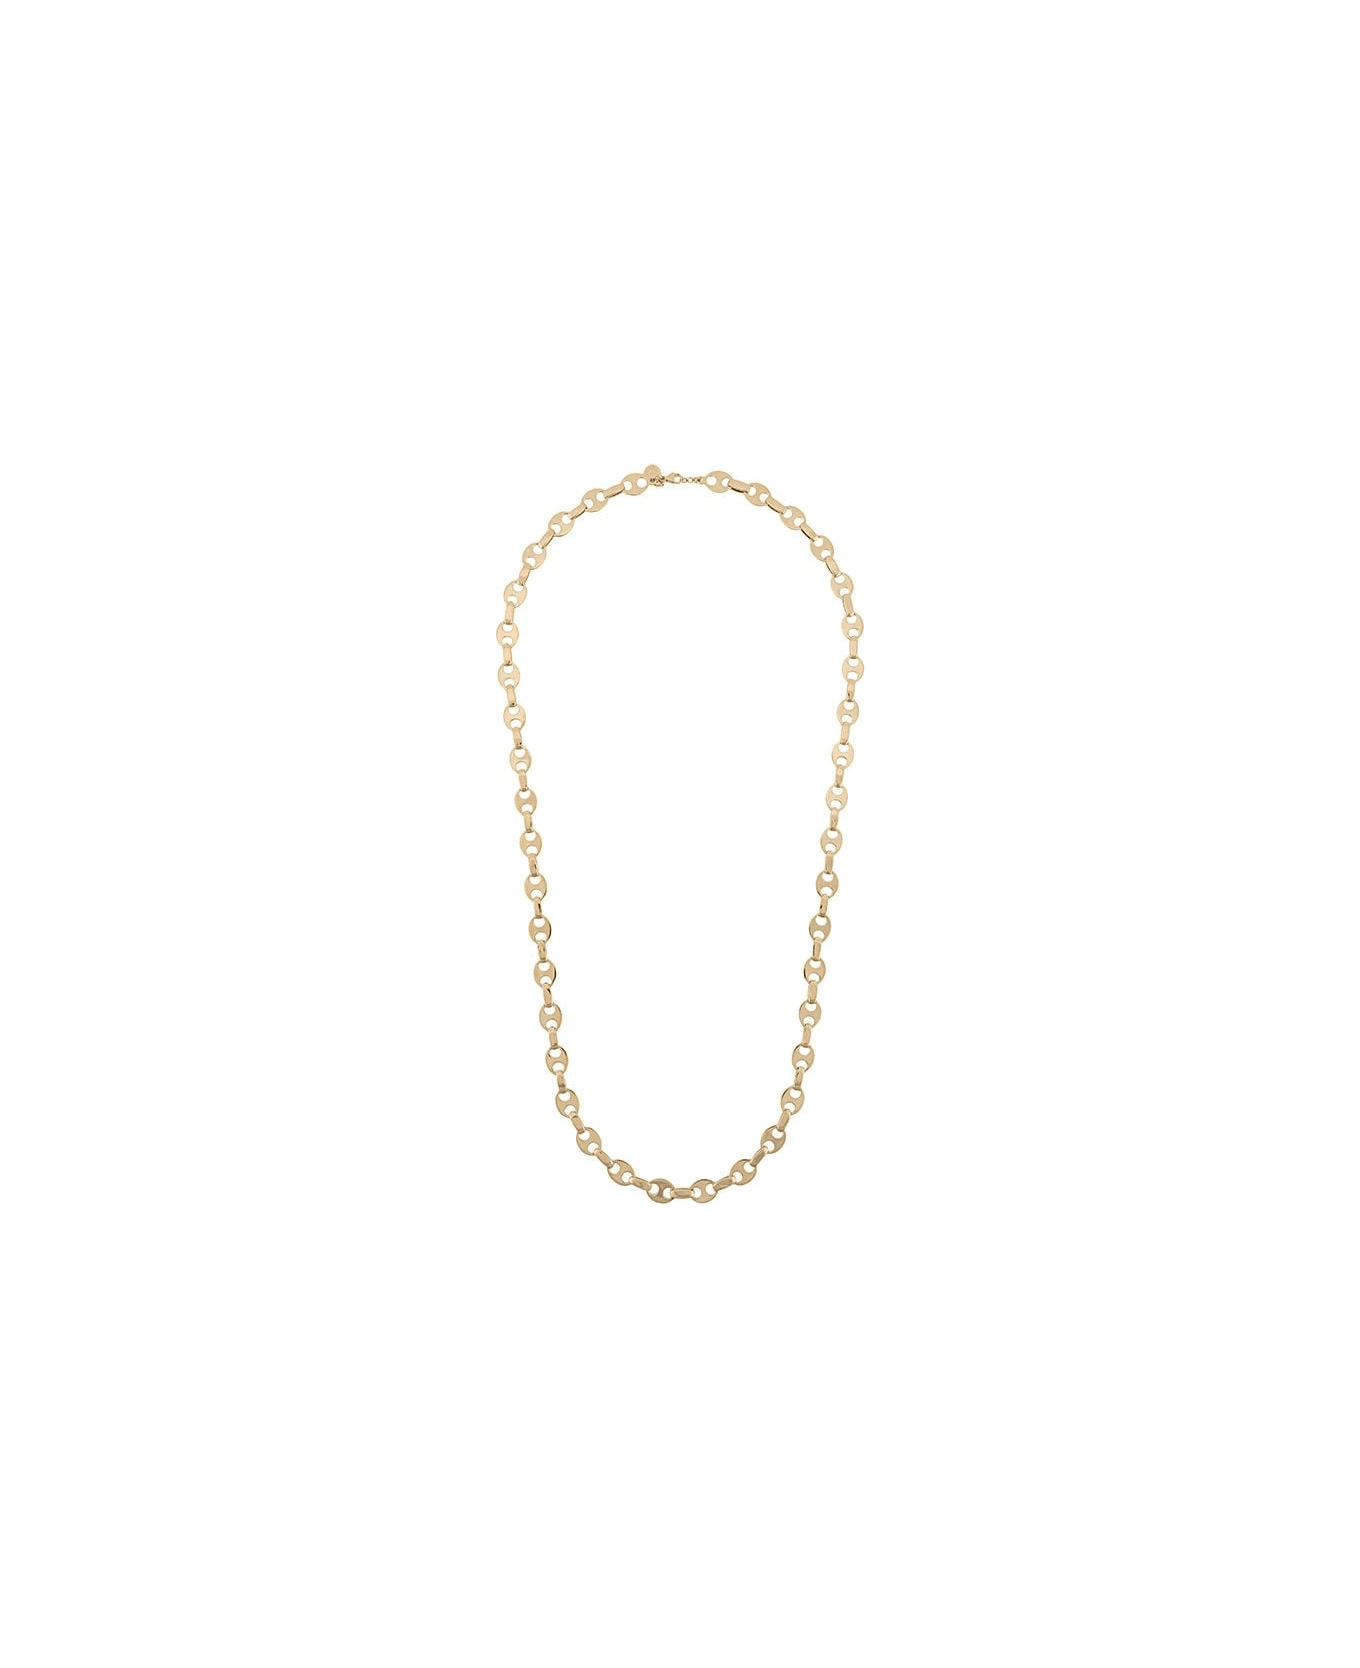 Paco Rabanne Chain Necklace In Golden Brass - Metallic